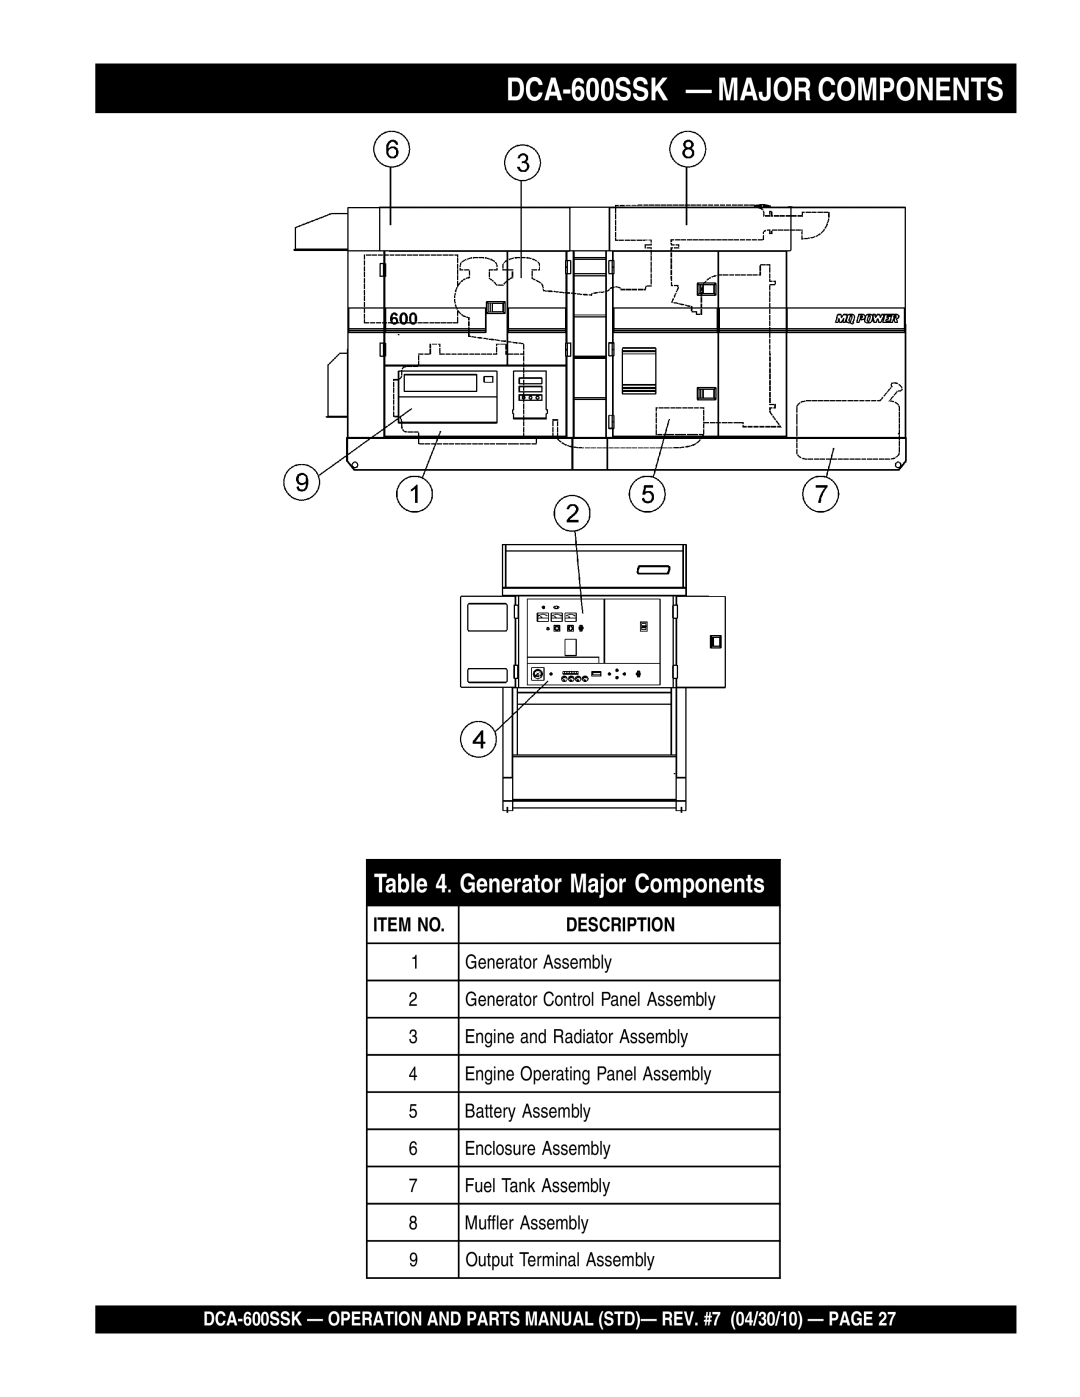 Multiquip operation manual DCA-600SSK - MAJOR COMPONENTS, Generator Major Components, Description, Item No 